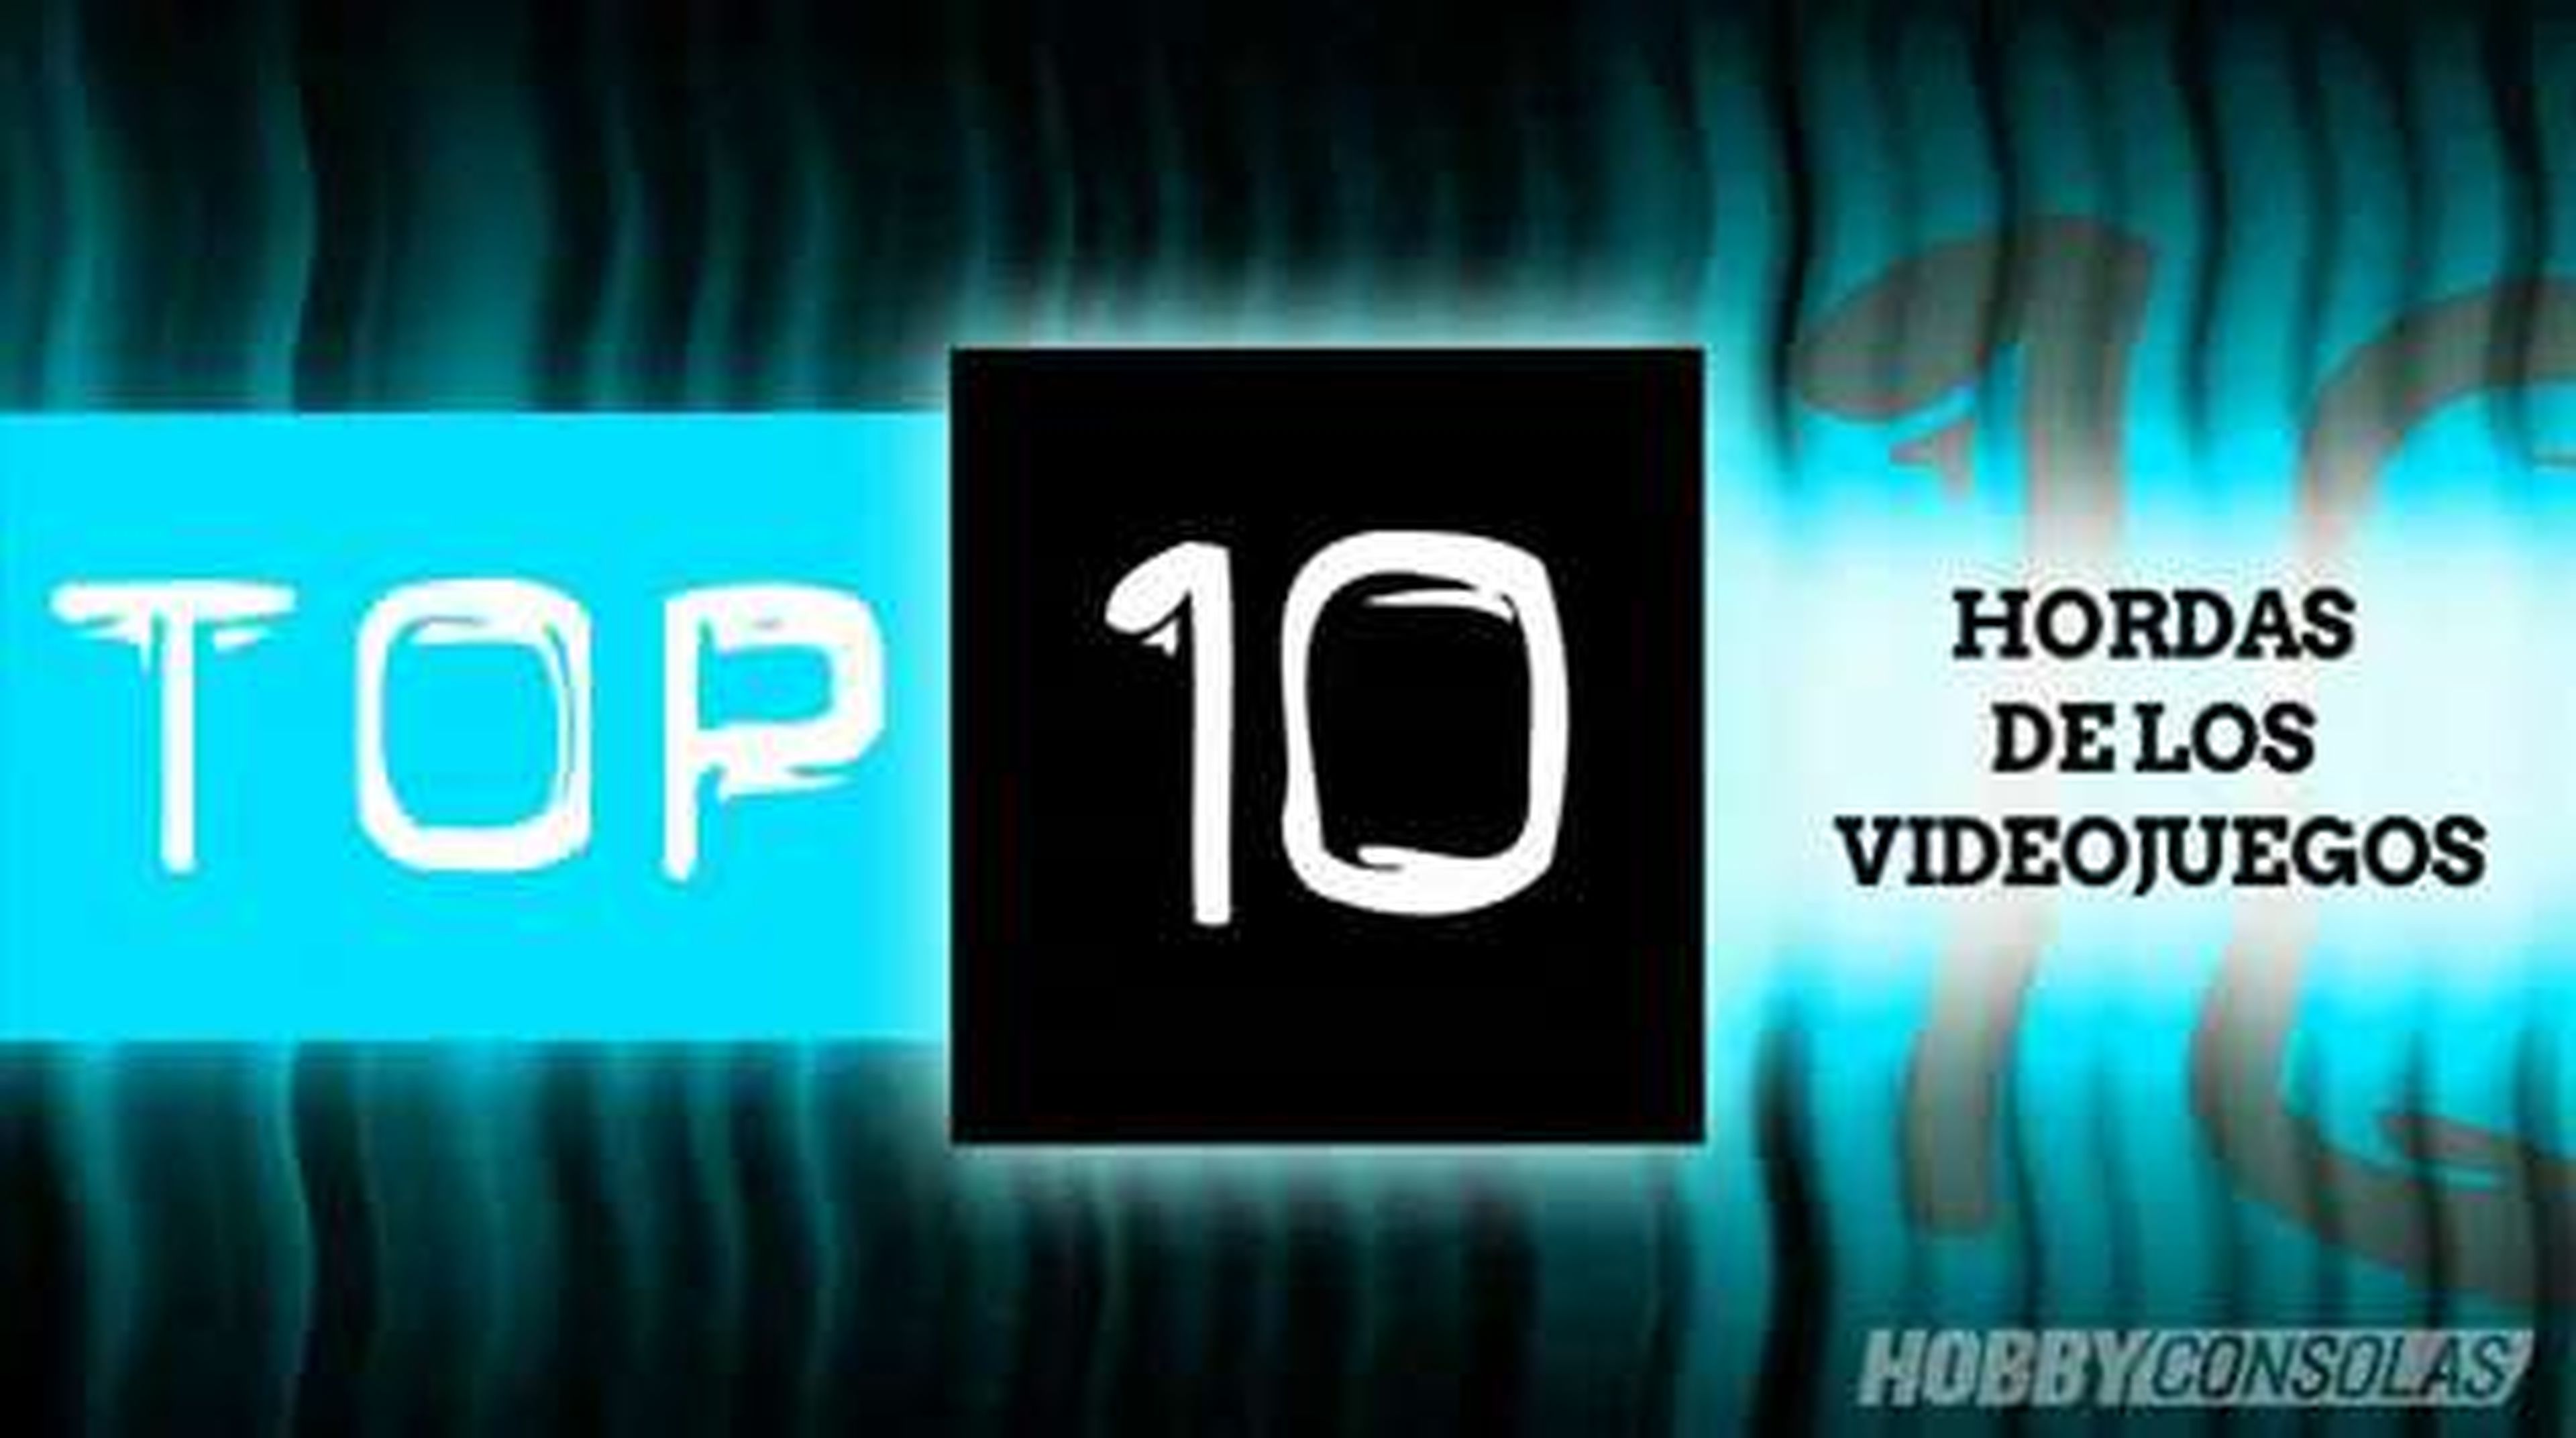 Top 10 Hordas de los videojuegos (HD) en HobbyConsolas.com